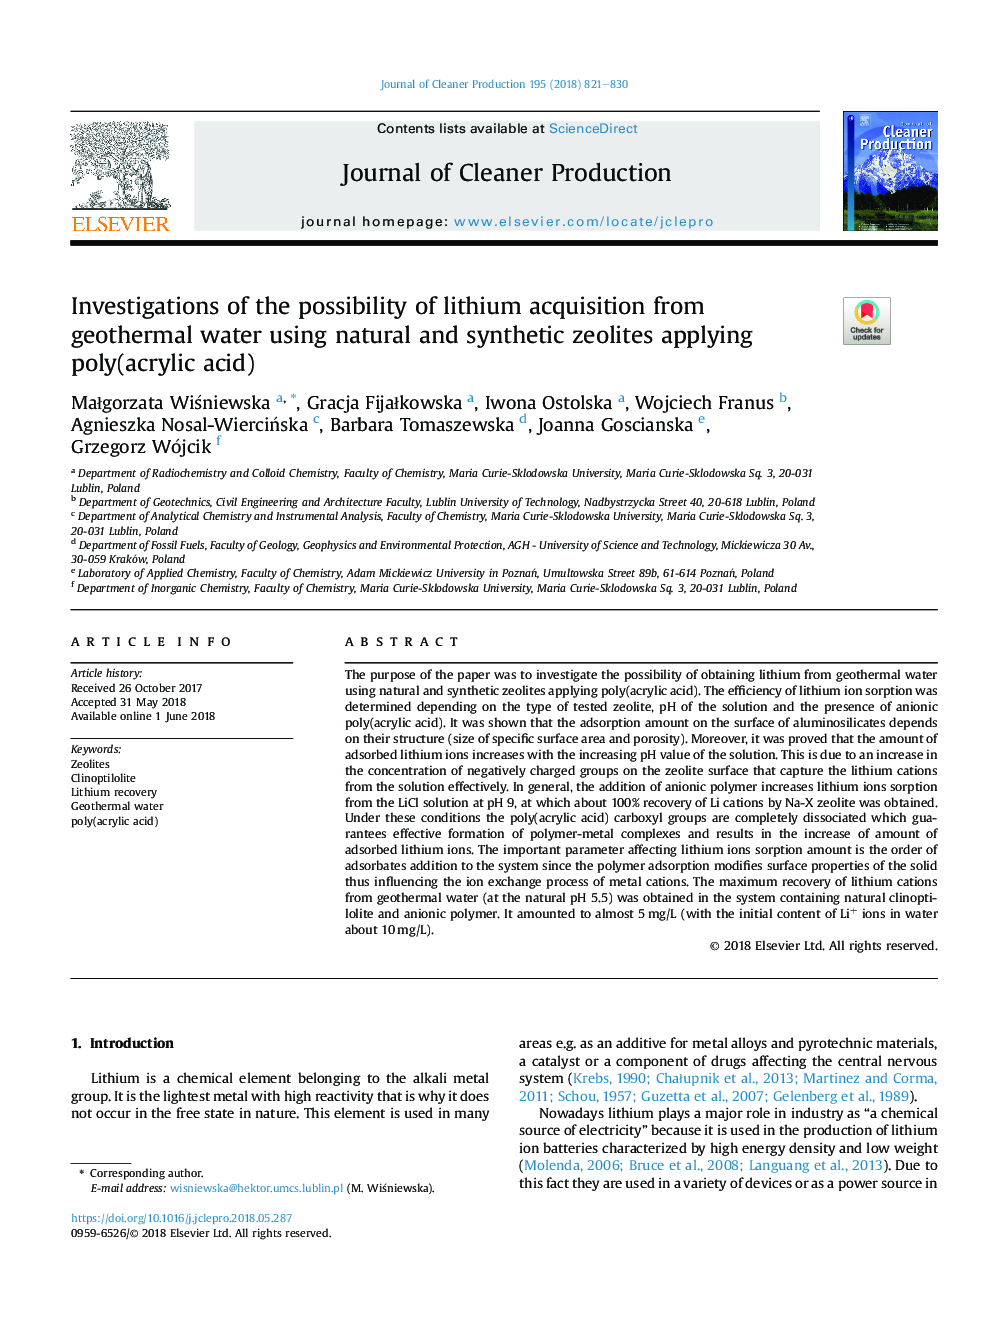 بررسی امکان دستیابی لیتیوم از آب ژئوترمال با استفاده از زئولیت های طبیعی و مصنوعی با استفاده از پلی (اکریلیک اسید) 